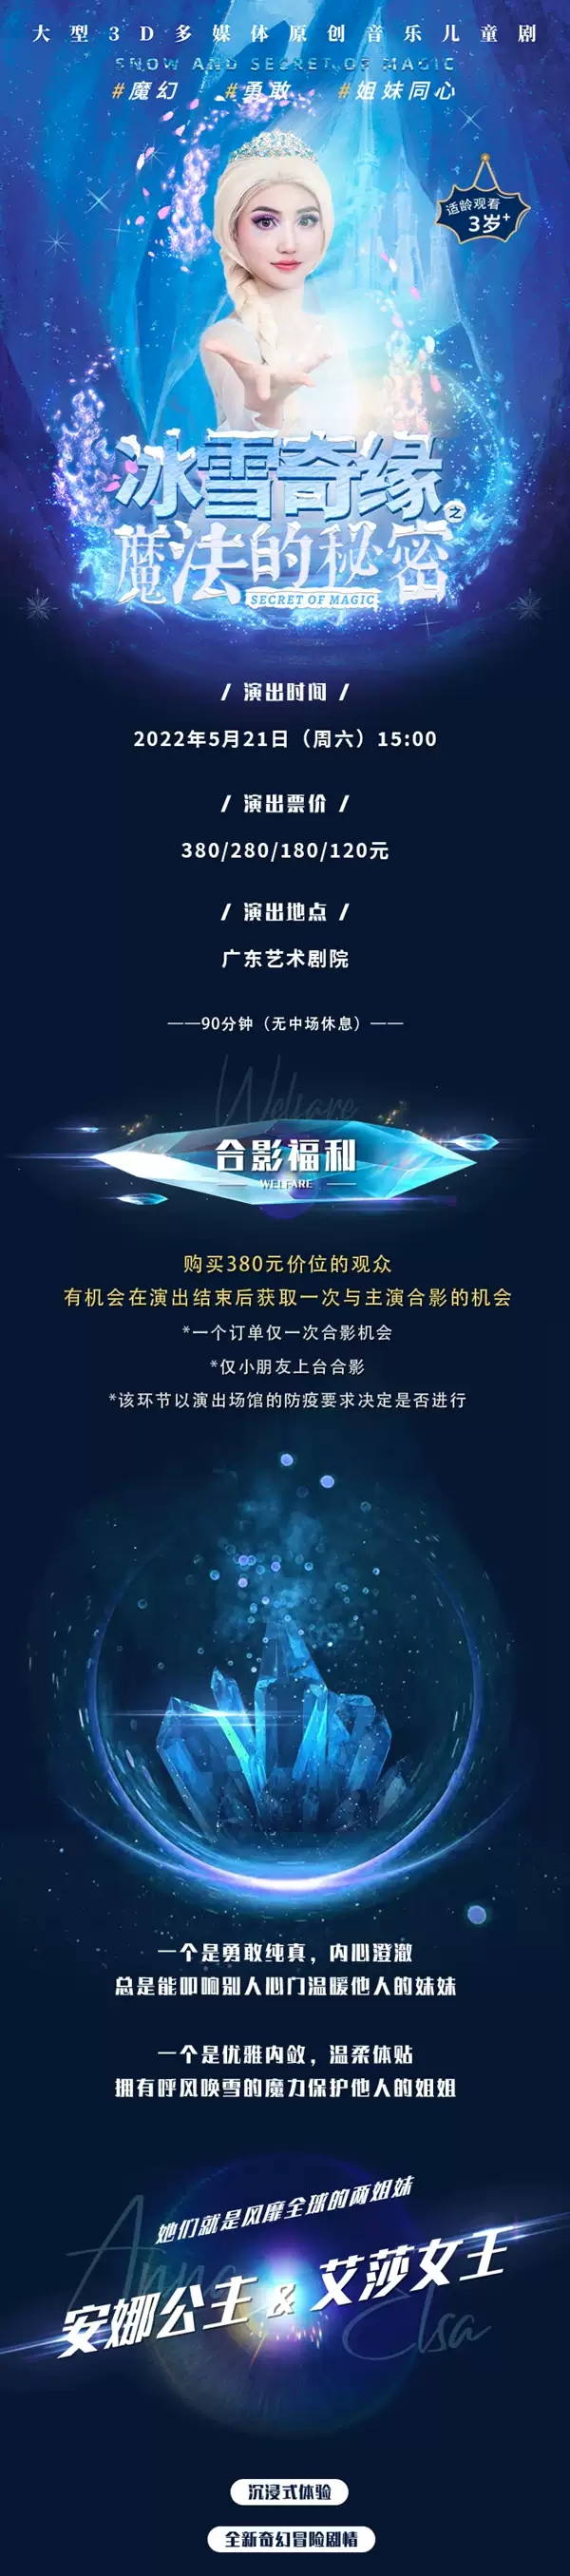 2022大型3D多媒体原创音乐儿童剧《冰雪奇缘之魔法的秘密》-广州站